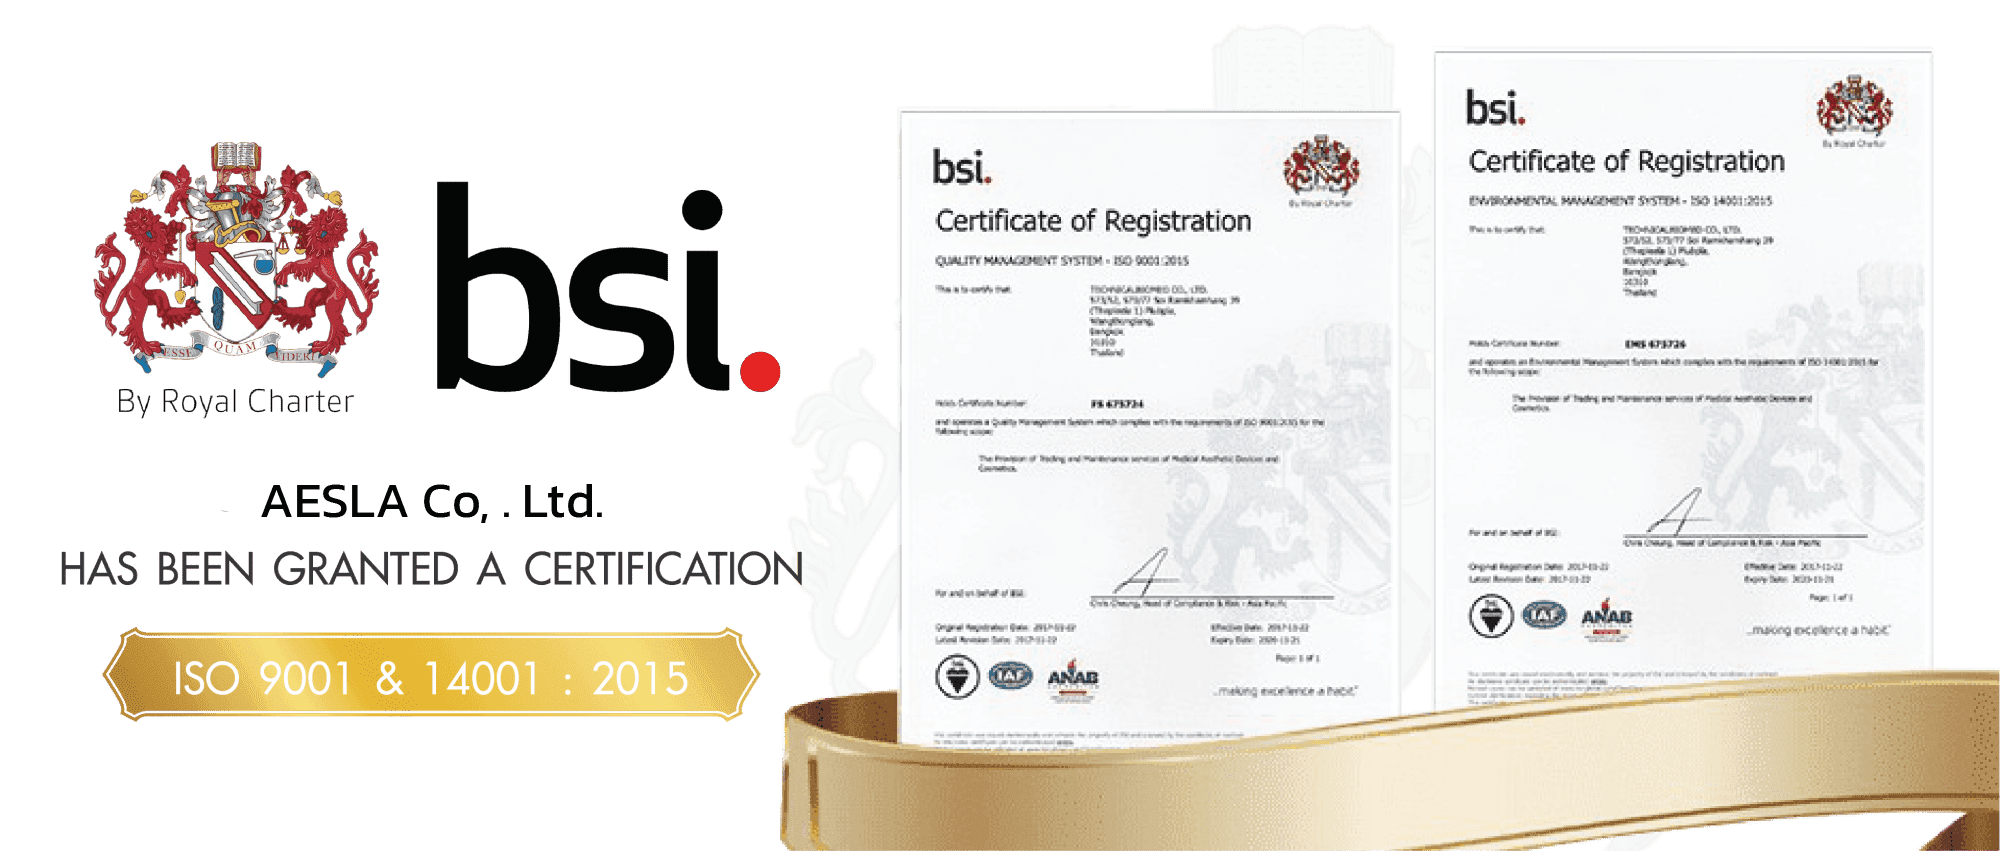 aesla bsi Certificate